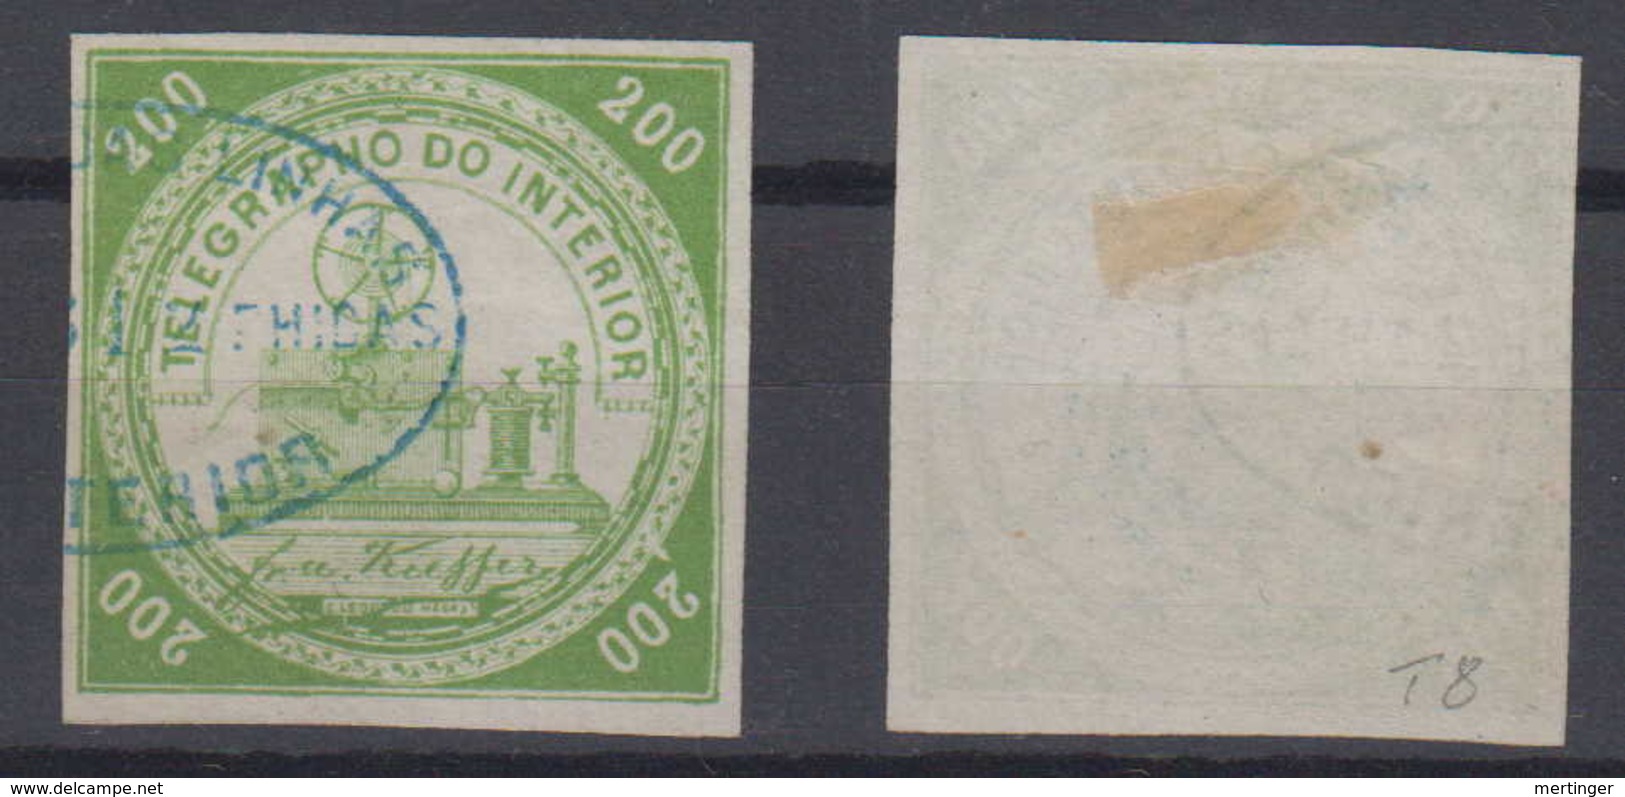 Brazil Brasil Telegrafo Telegraph 1869 200R Used Kiefer Good Margins - Telegraphenmarken